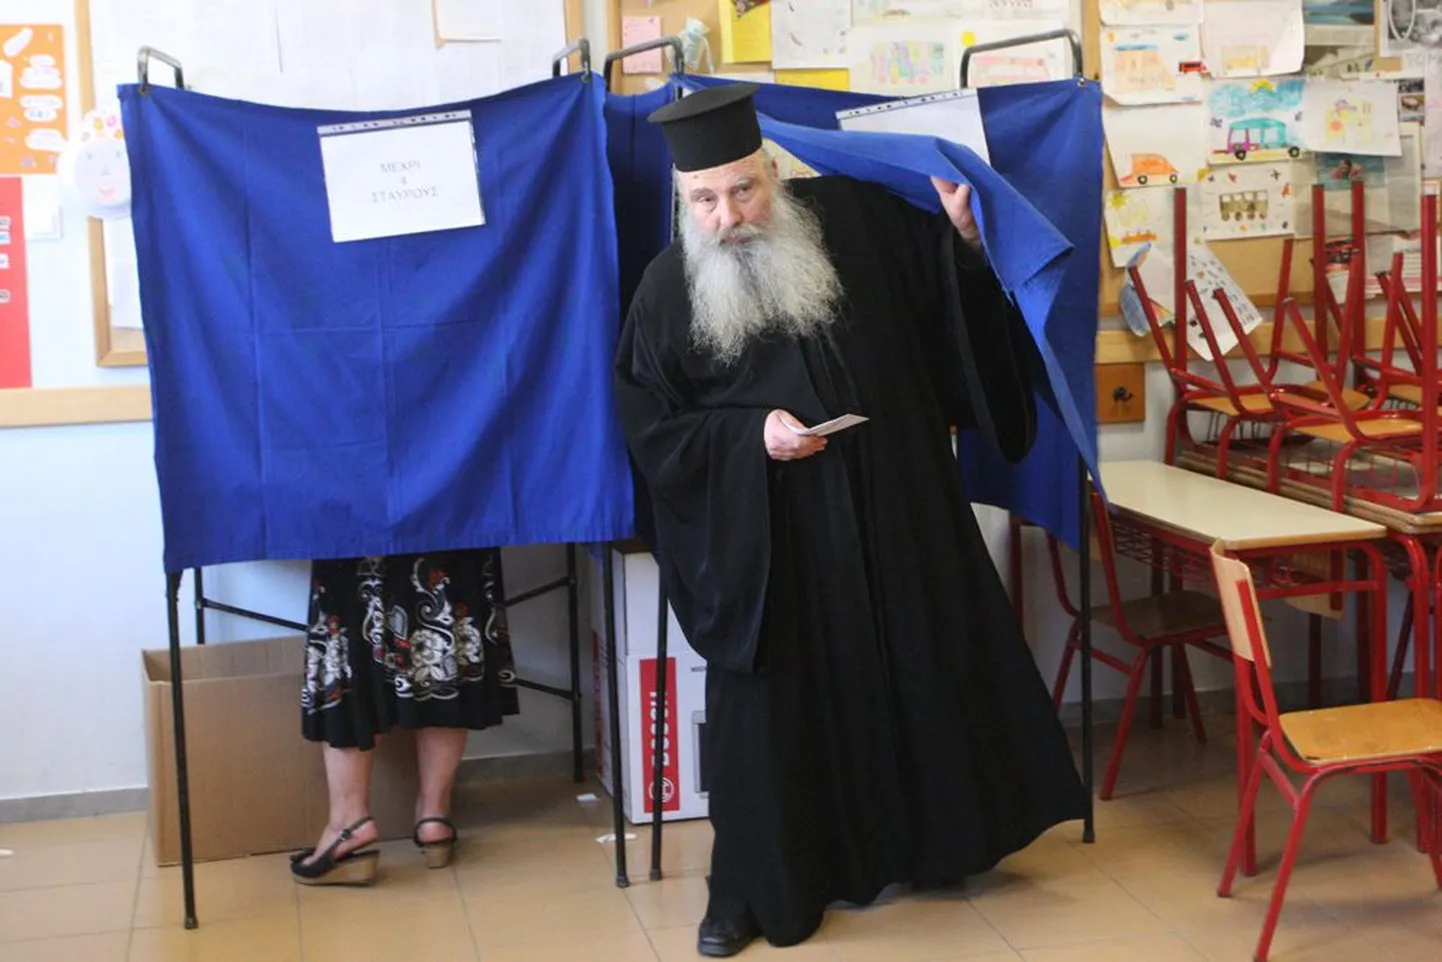 Kreeklastest preester eile riigi põhjaosas asuvas sadamalinnas Thessalonikis valimiskabiinist väljumas.